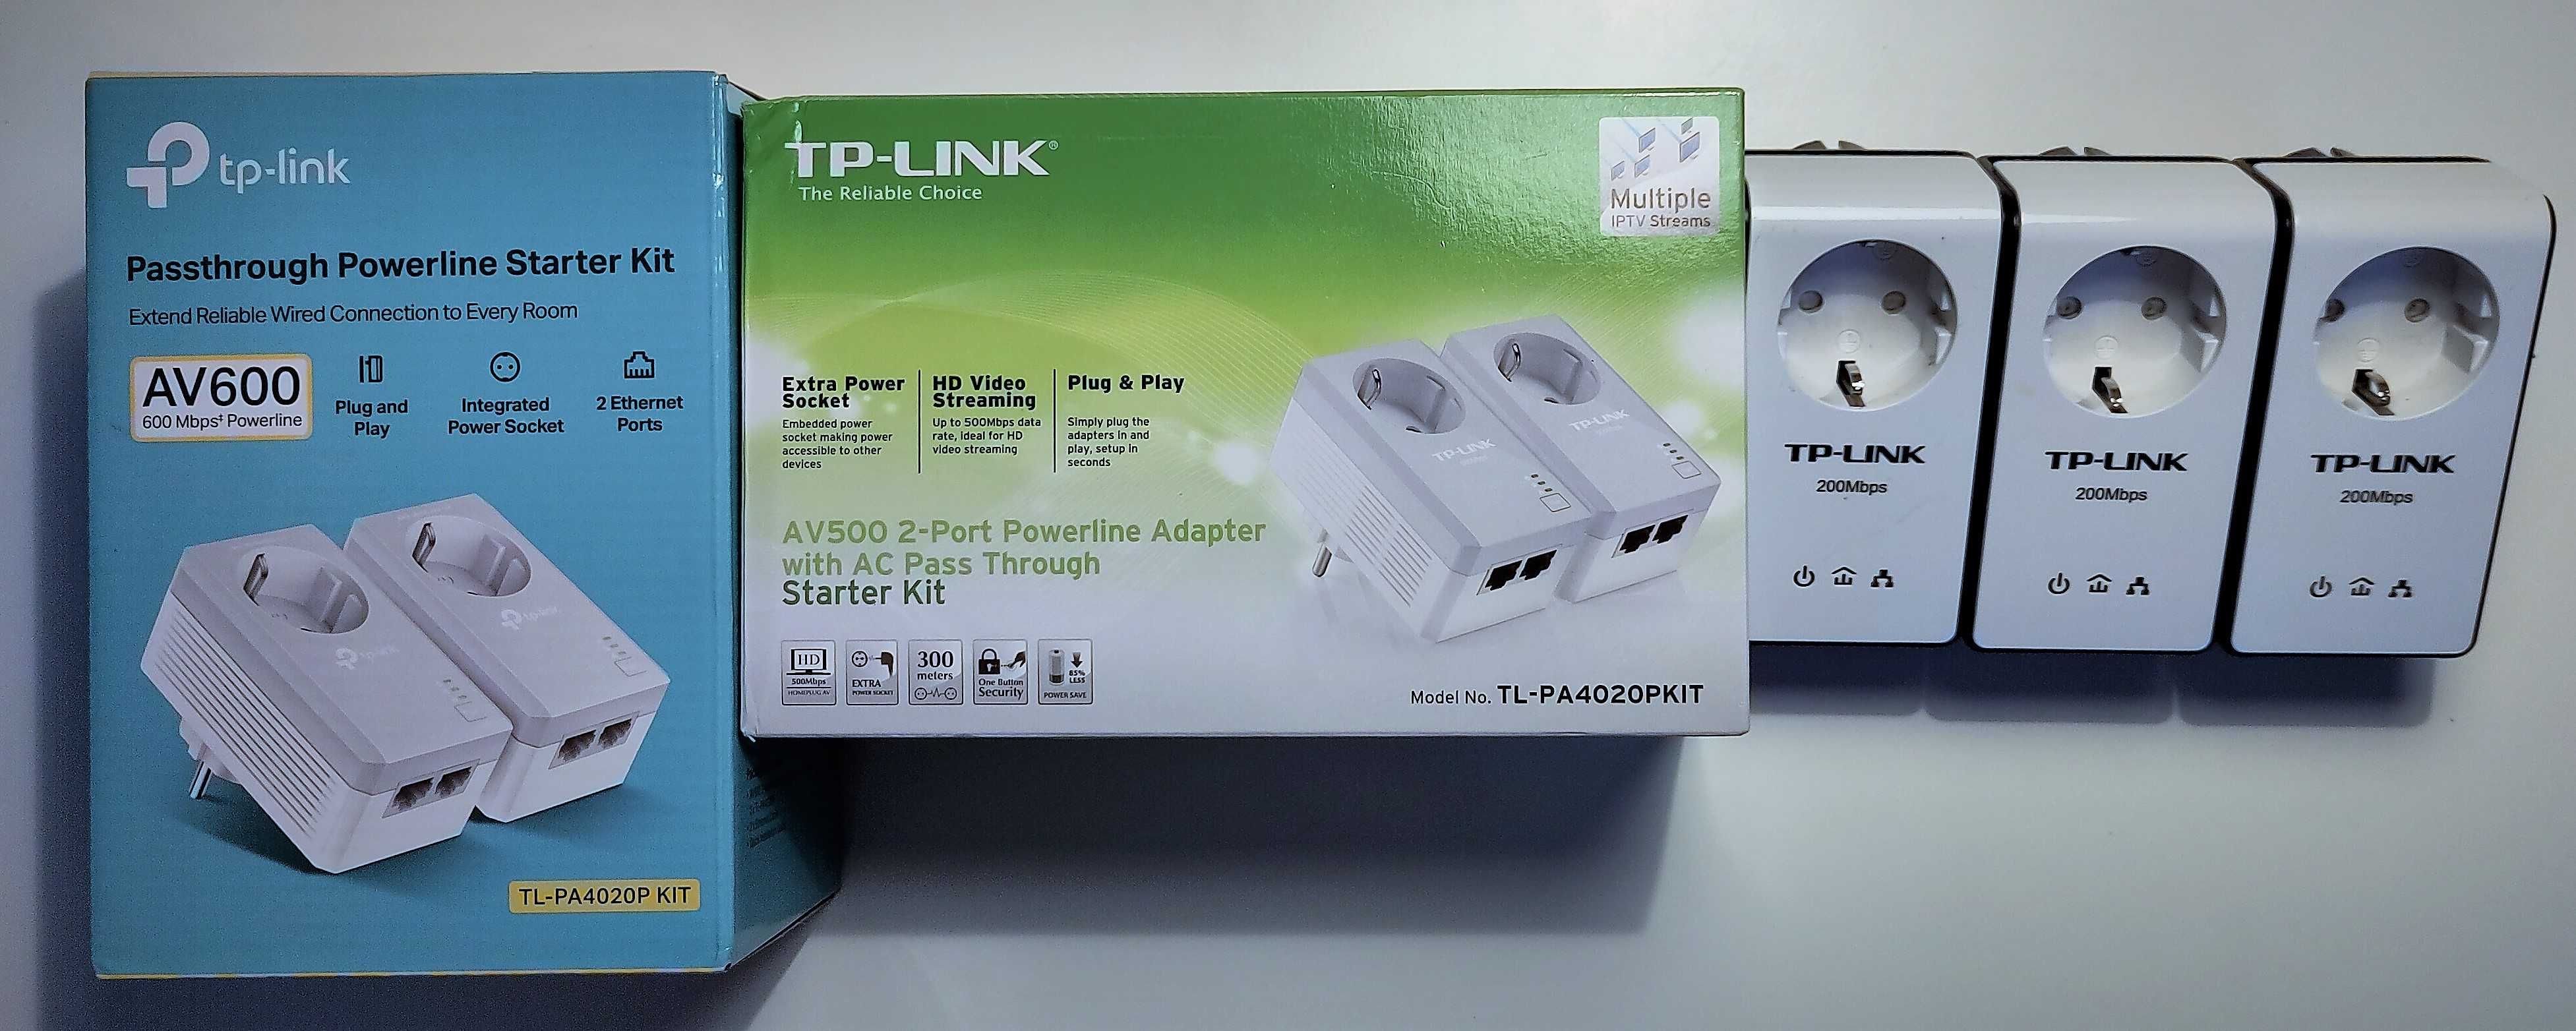 Adaptadores Powerline TP-Link - 7un.